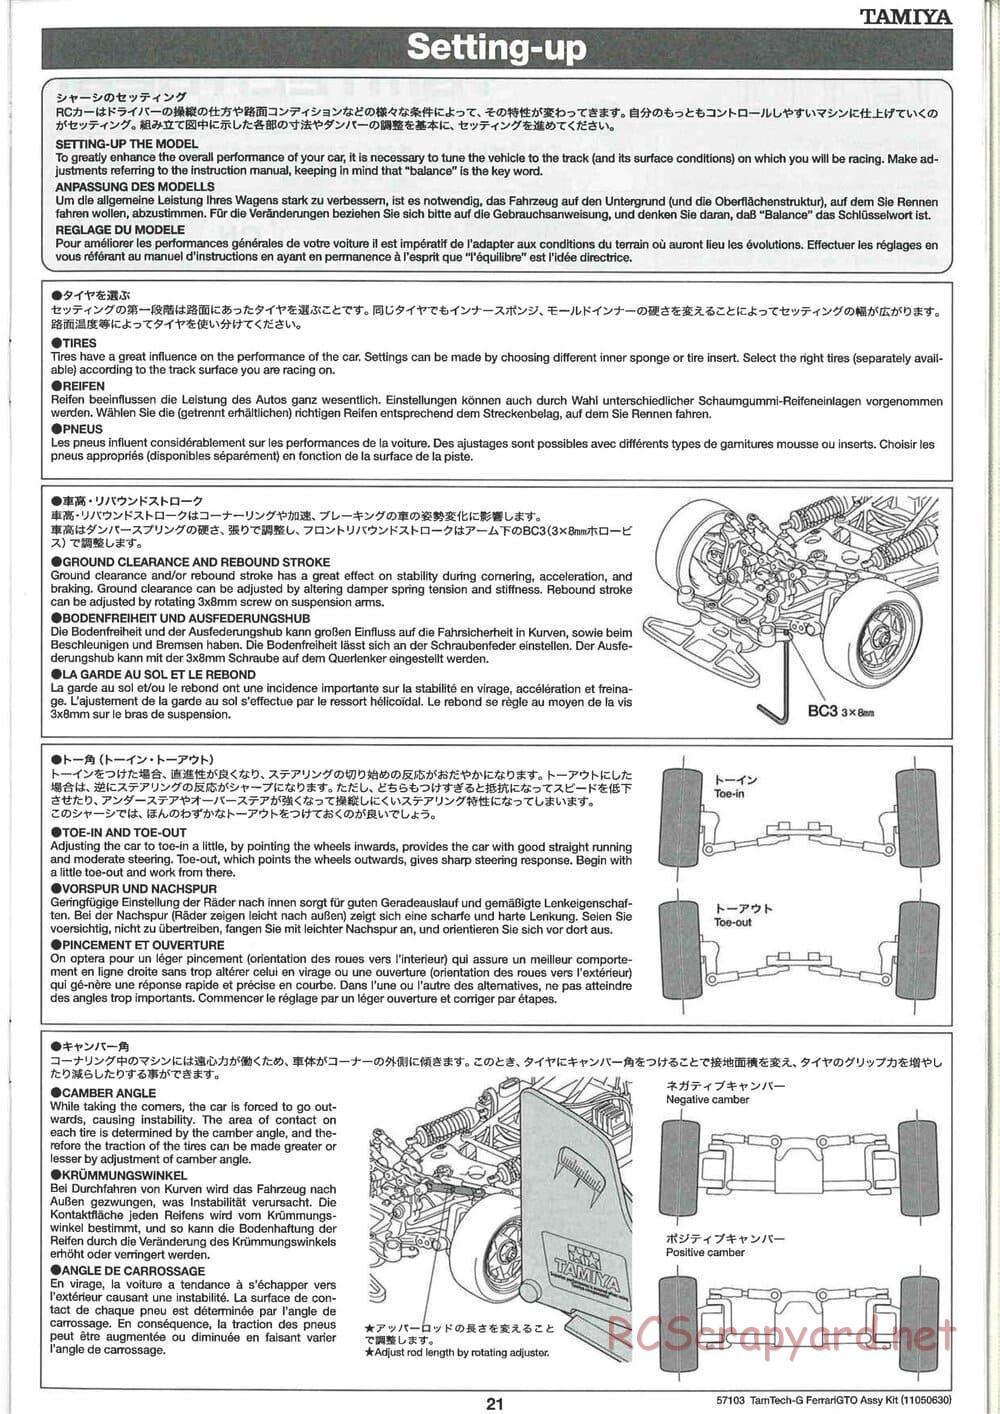 Tamiya - Ferrari 288 GTO - GT-01 Chassis - Manual - Page 21